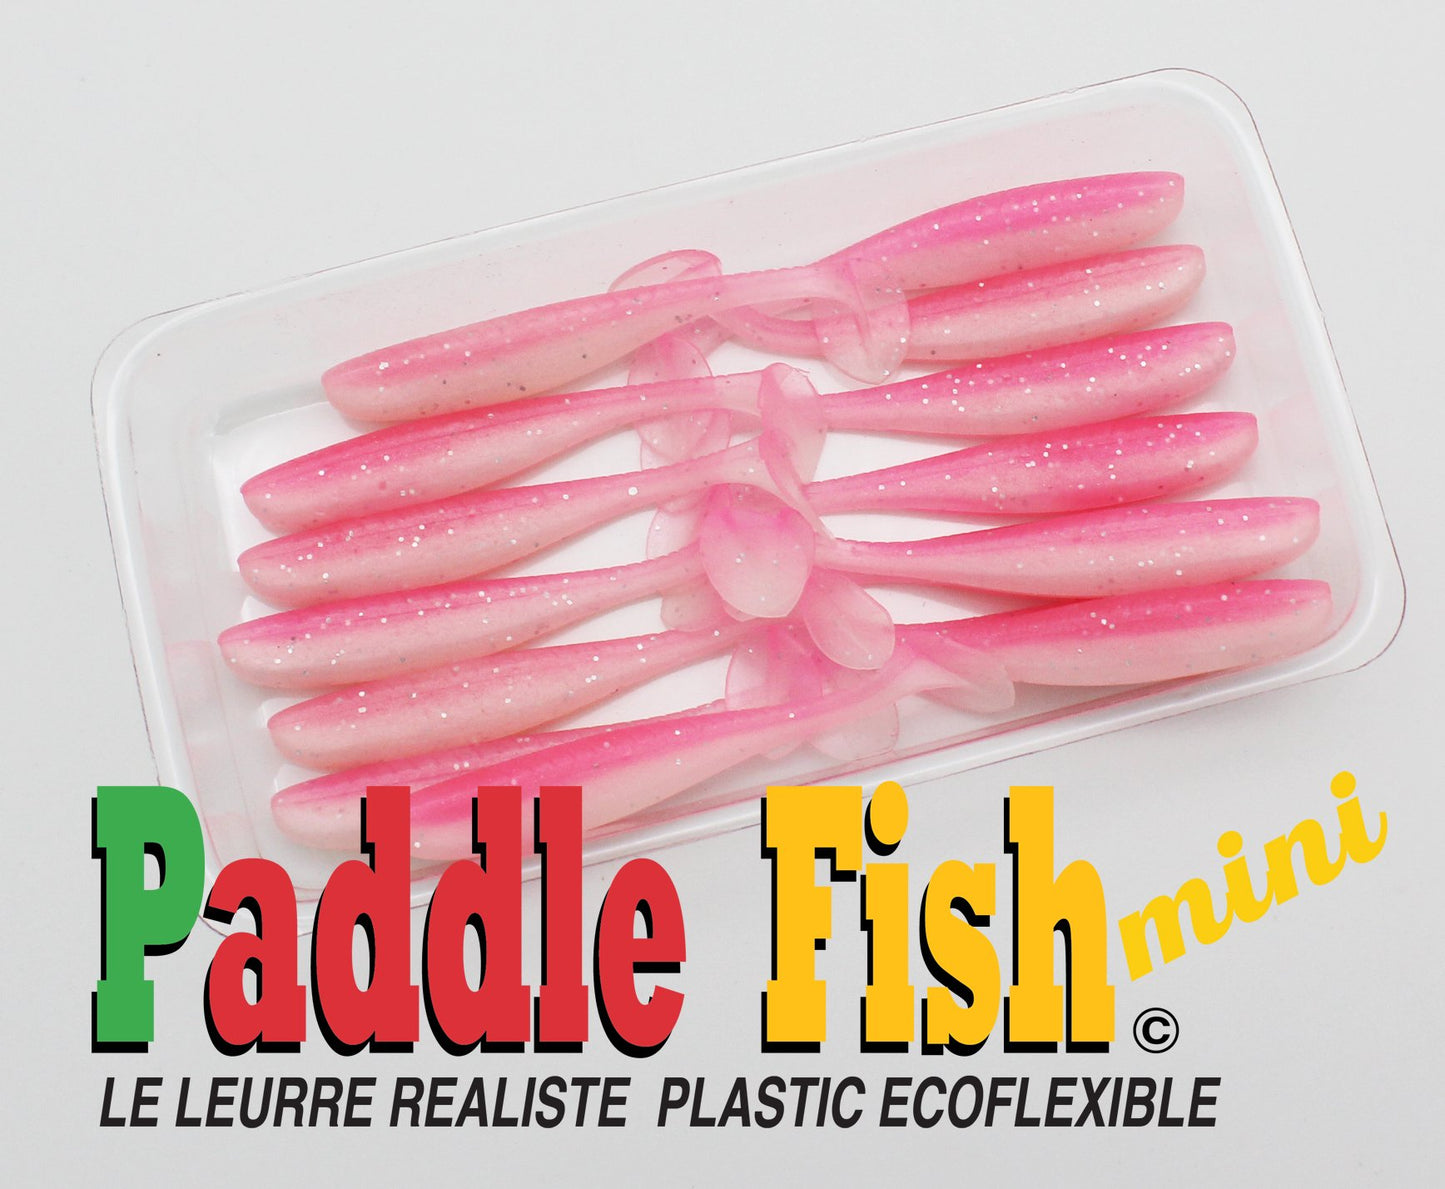 Paddle Fish Mini 2.5"